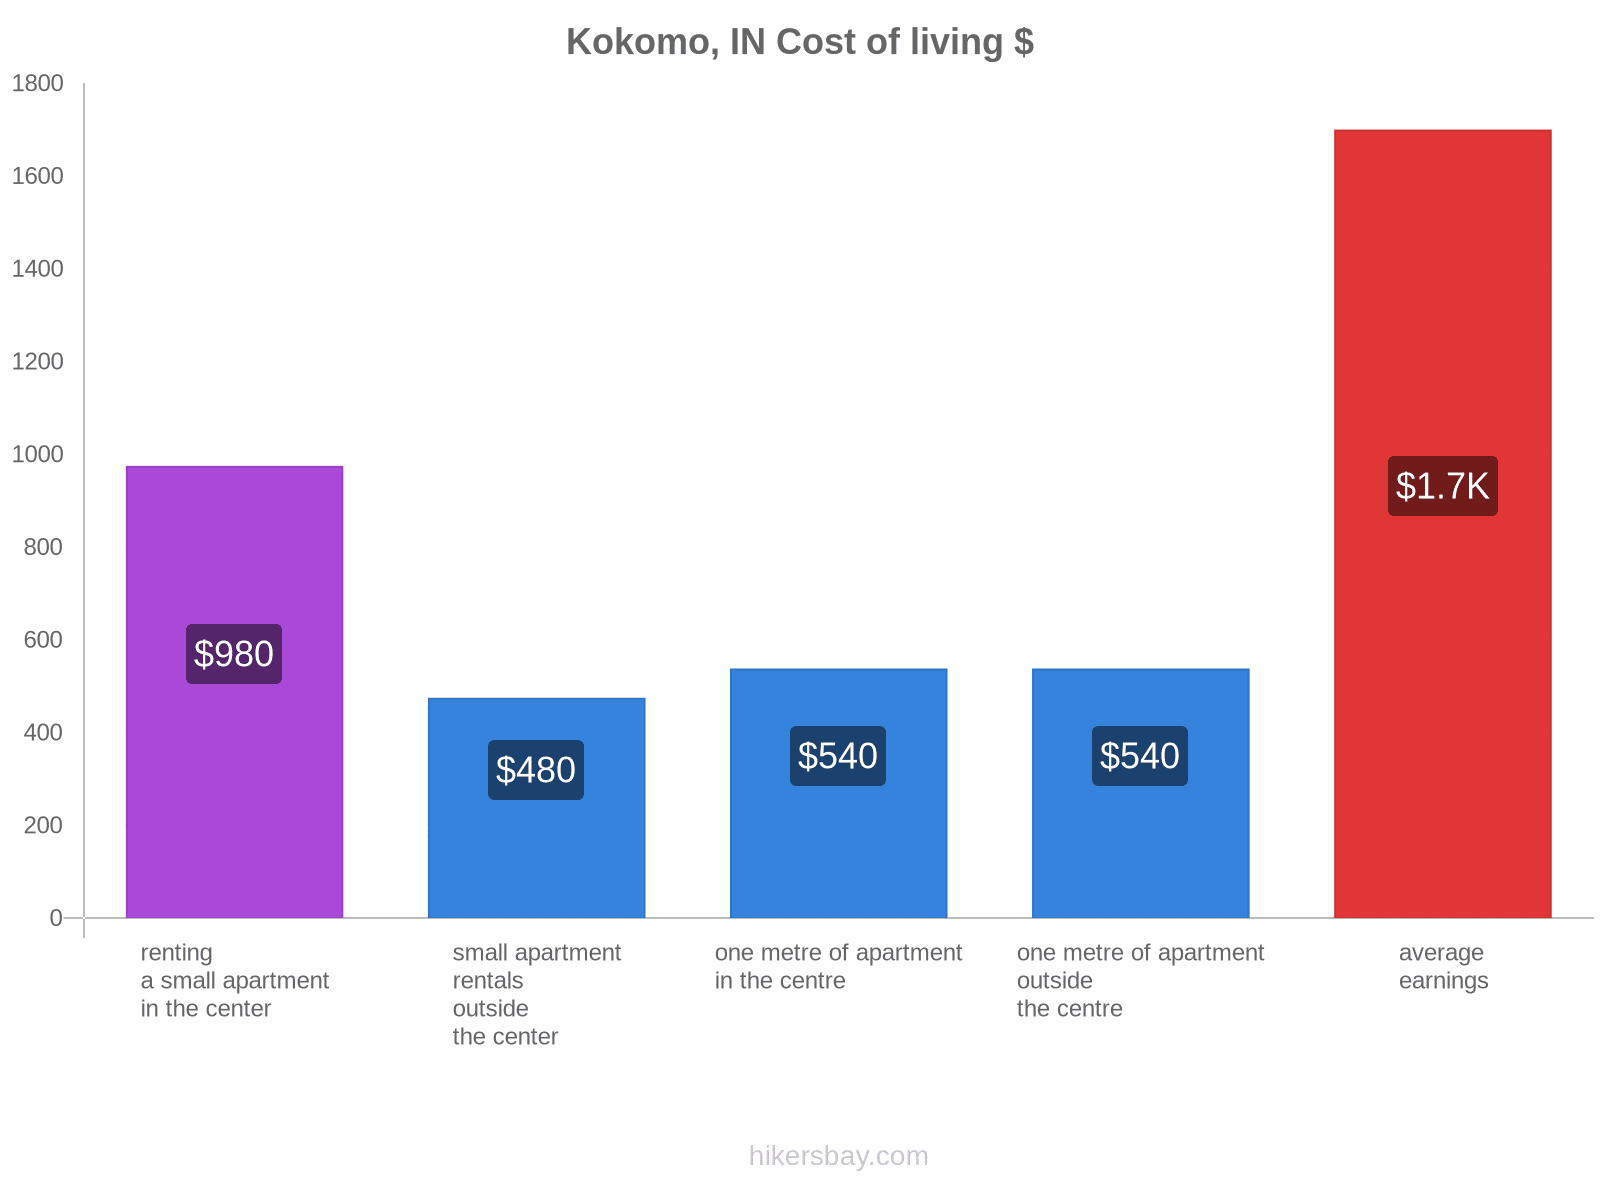 Kokomo, IN cost of living hikersbay.com